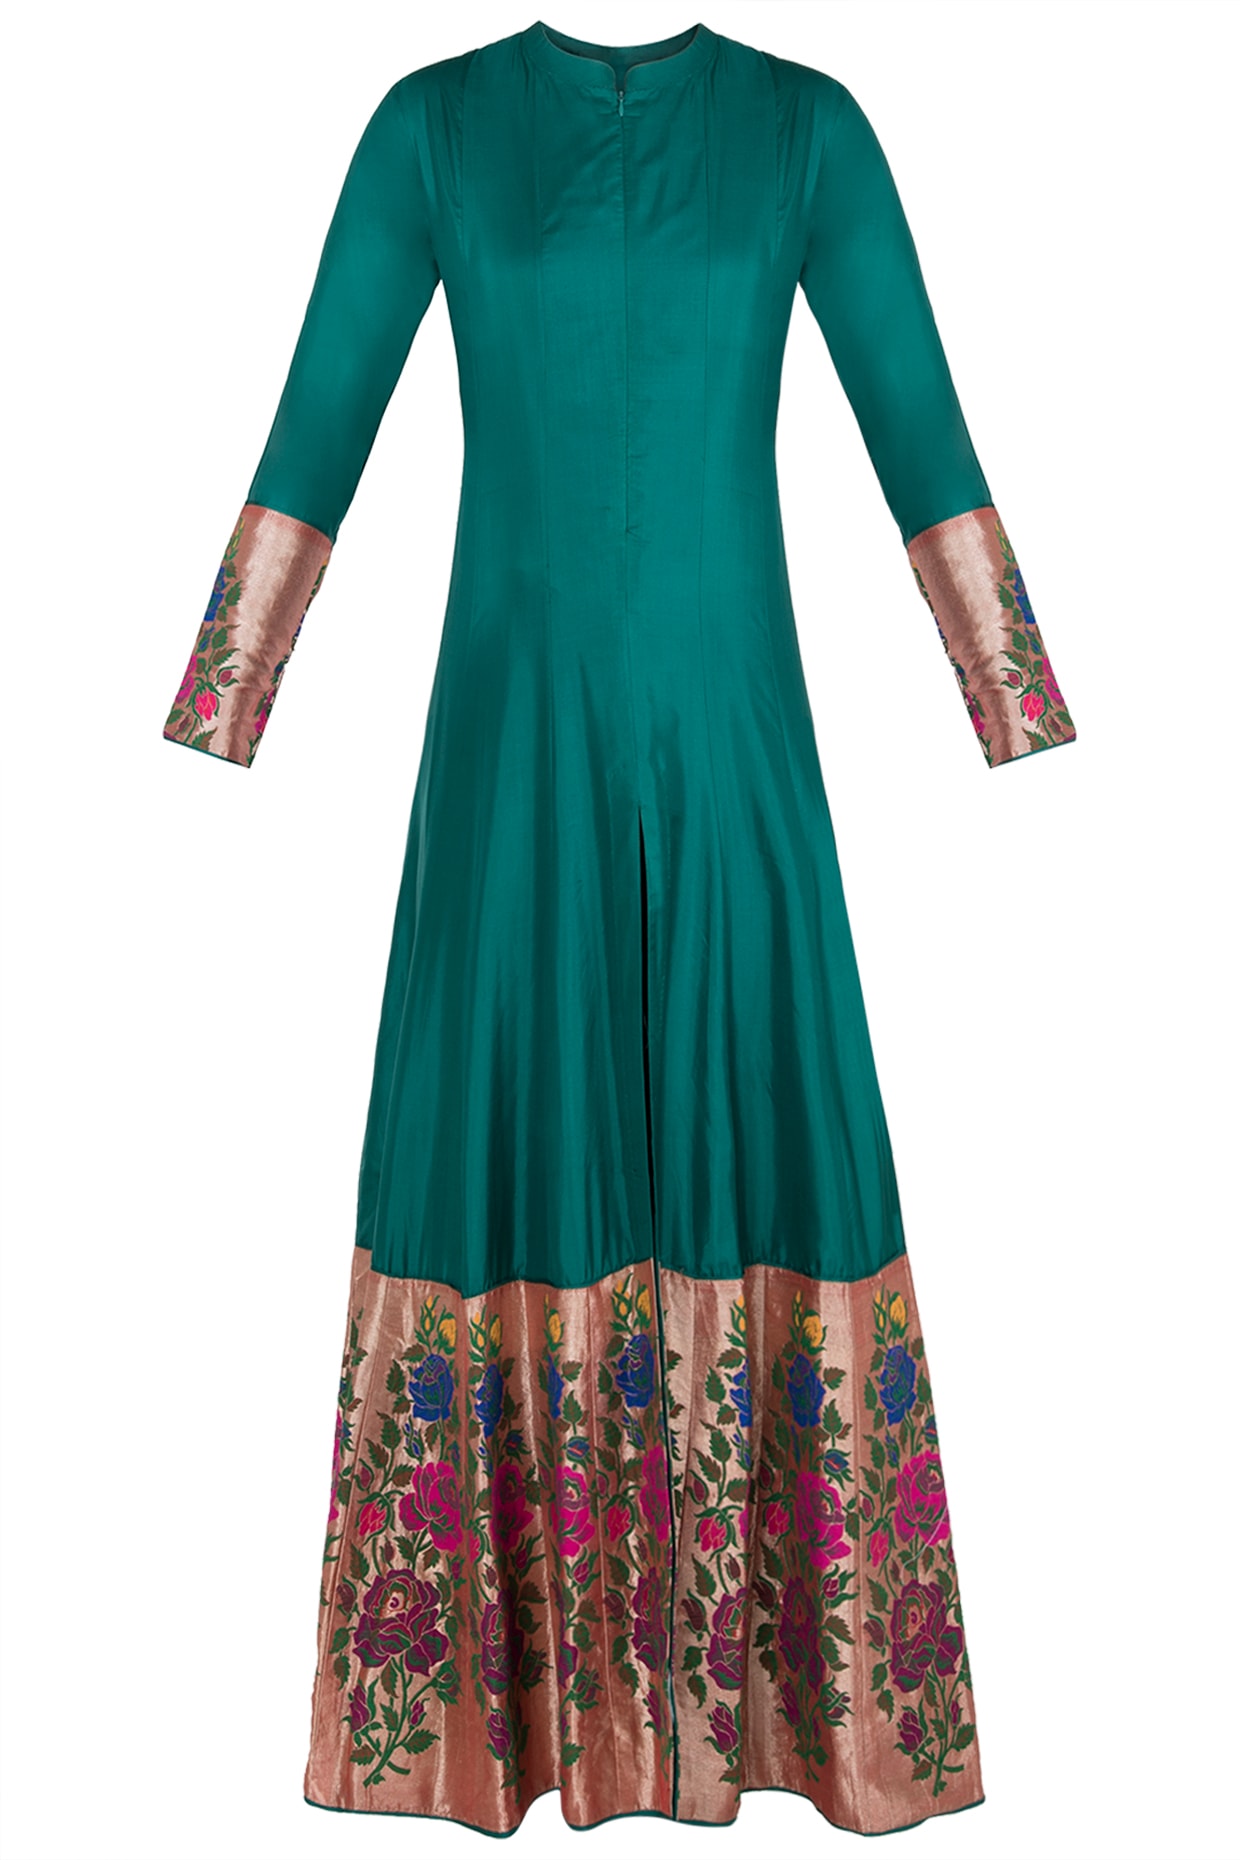 paithani dress online shopping